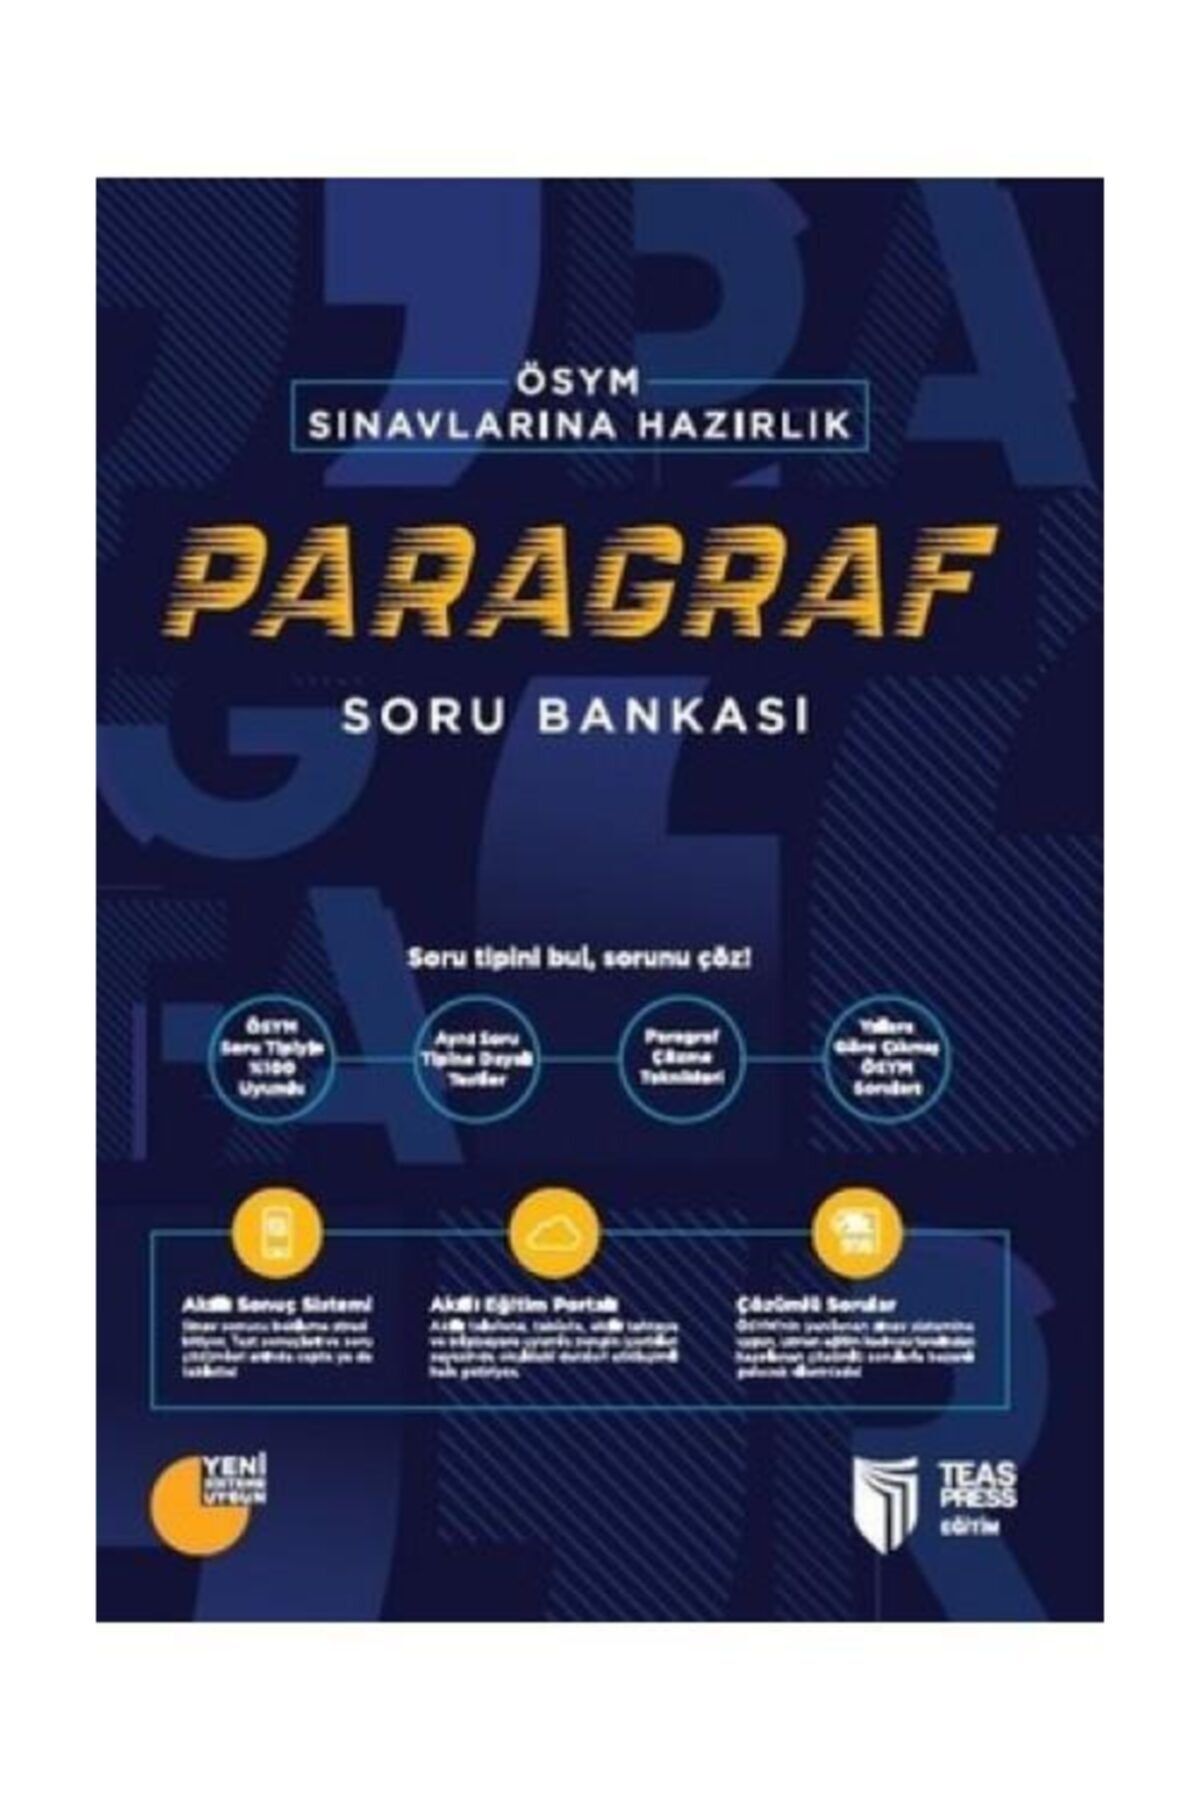 Teas Press Yayınları Ösym Sınavlarına Hazırlık Paragraf Soru Bankası